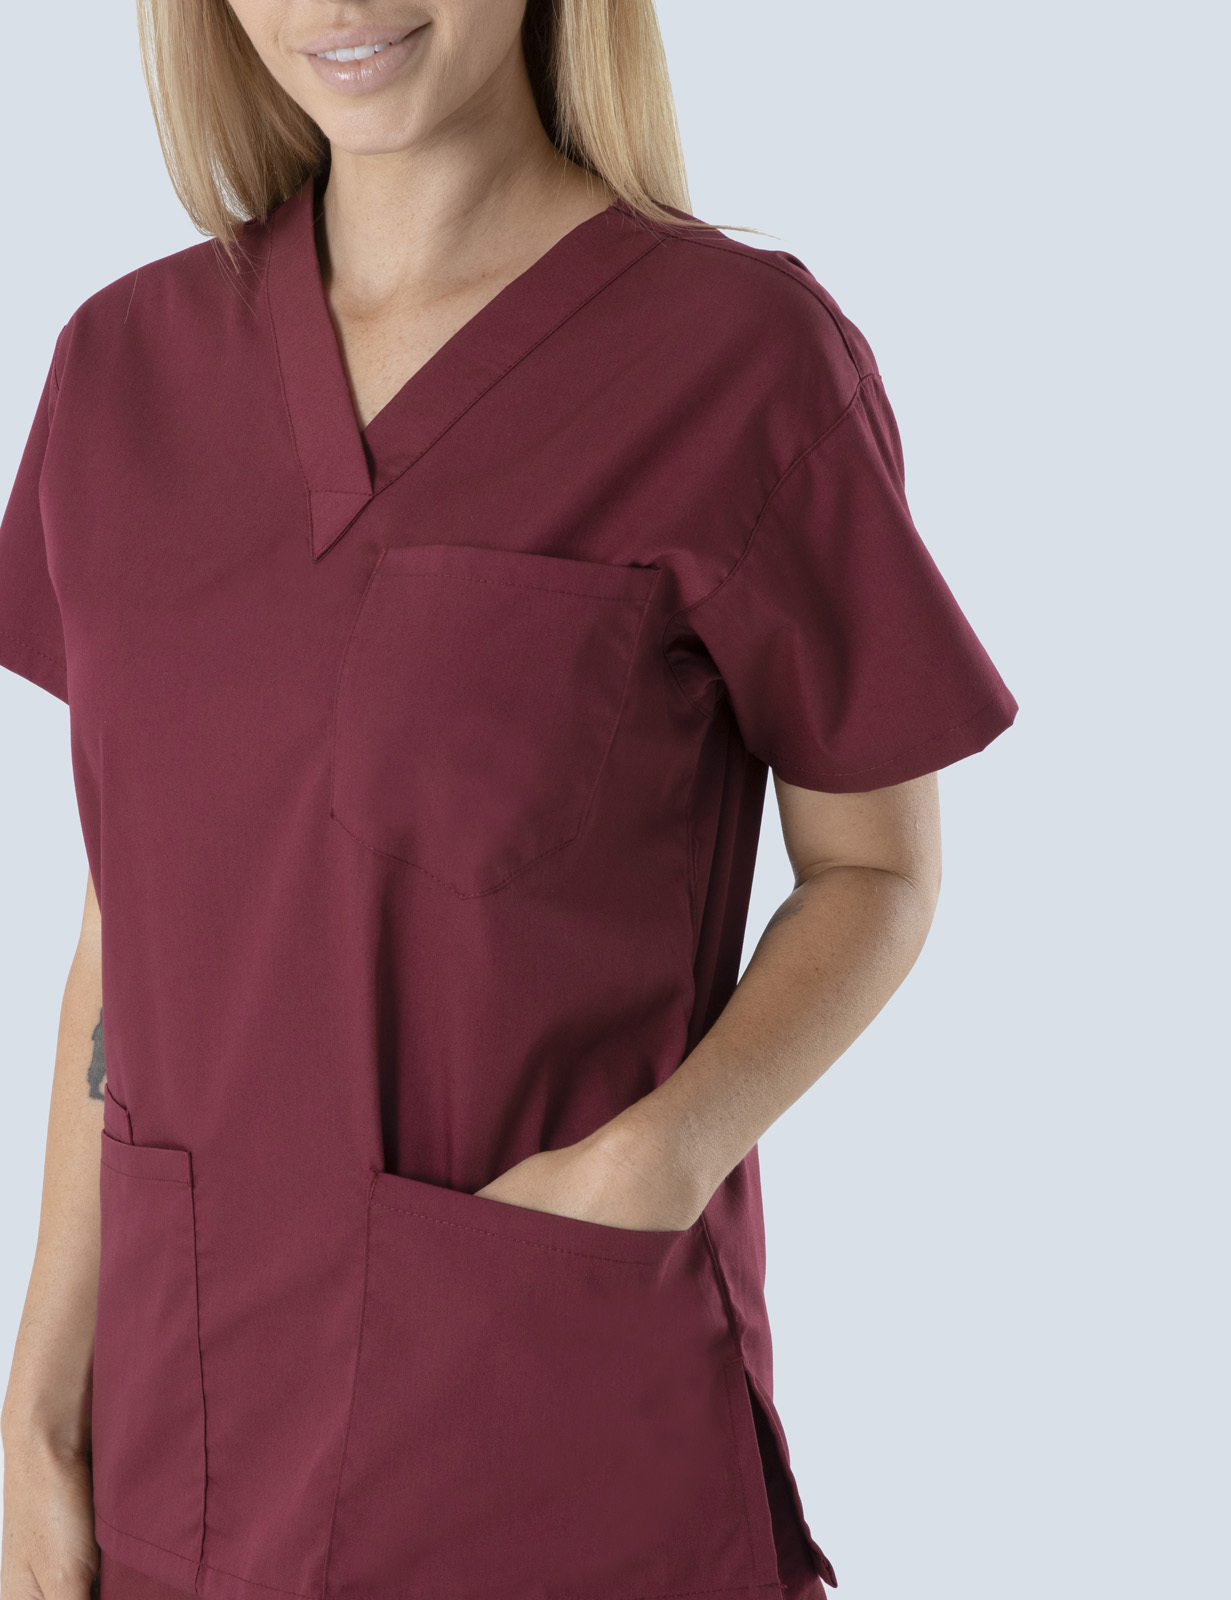 Canberra Hospital Stroke Unit - Stroke Practitioner Nurse Uniform Set Bundle (4 Pocket and Cargo Pants in Burgundy incl Logos)